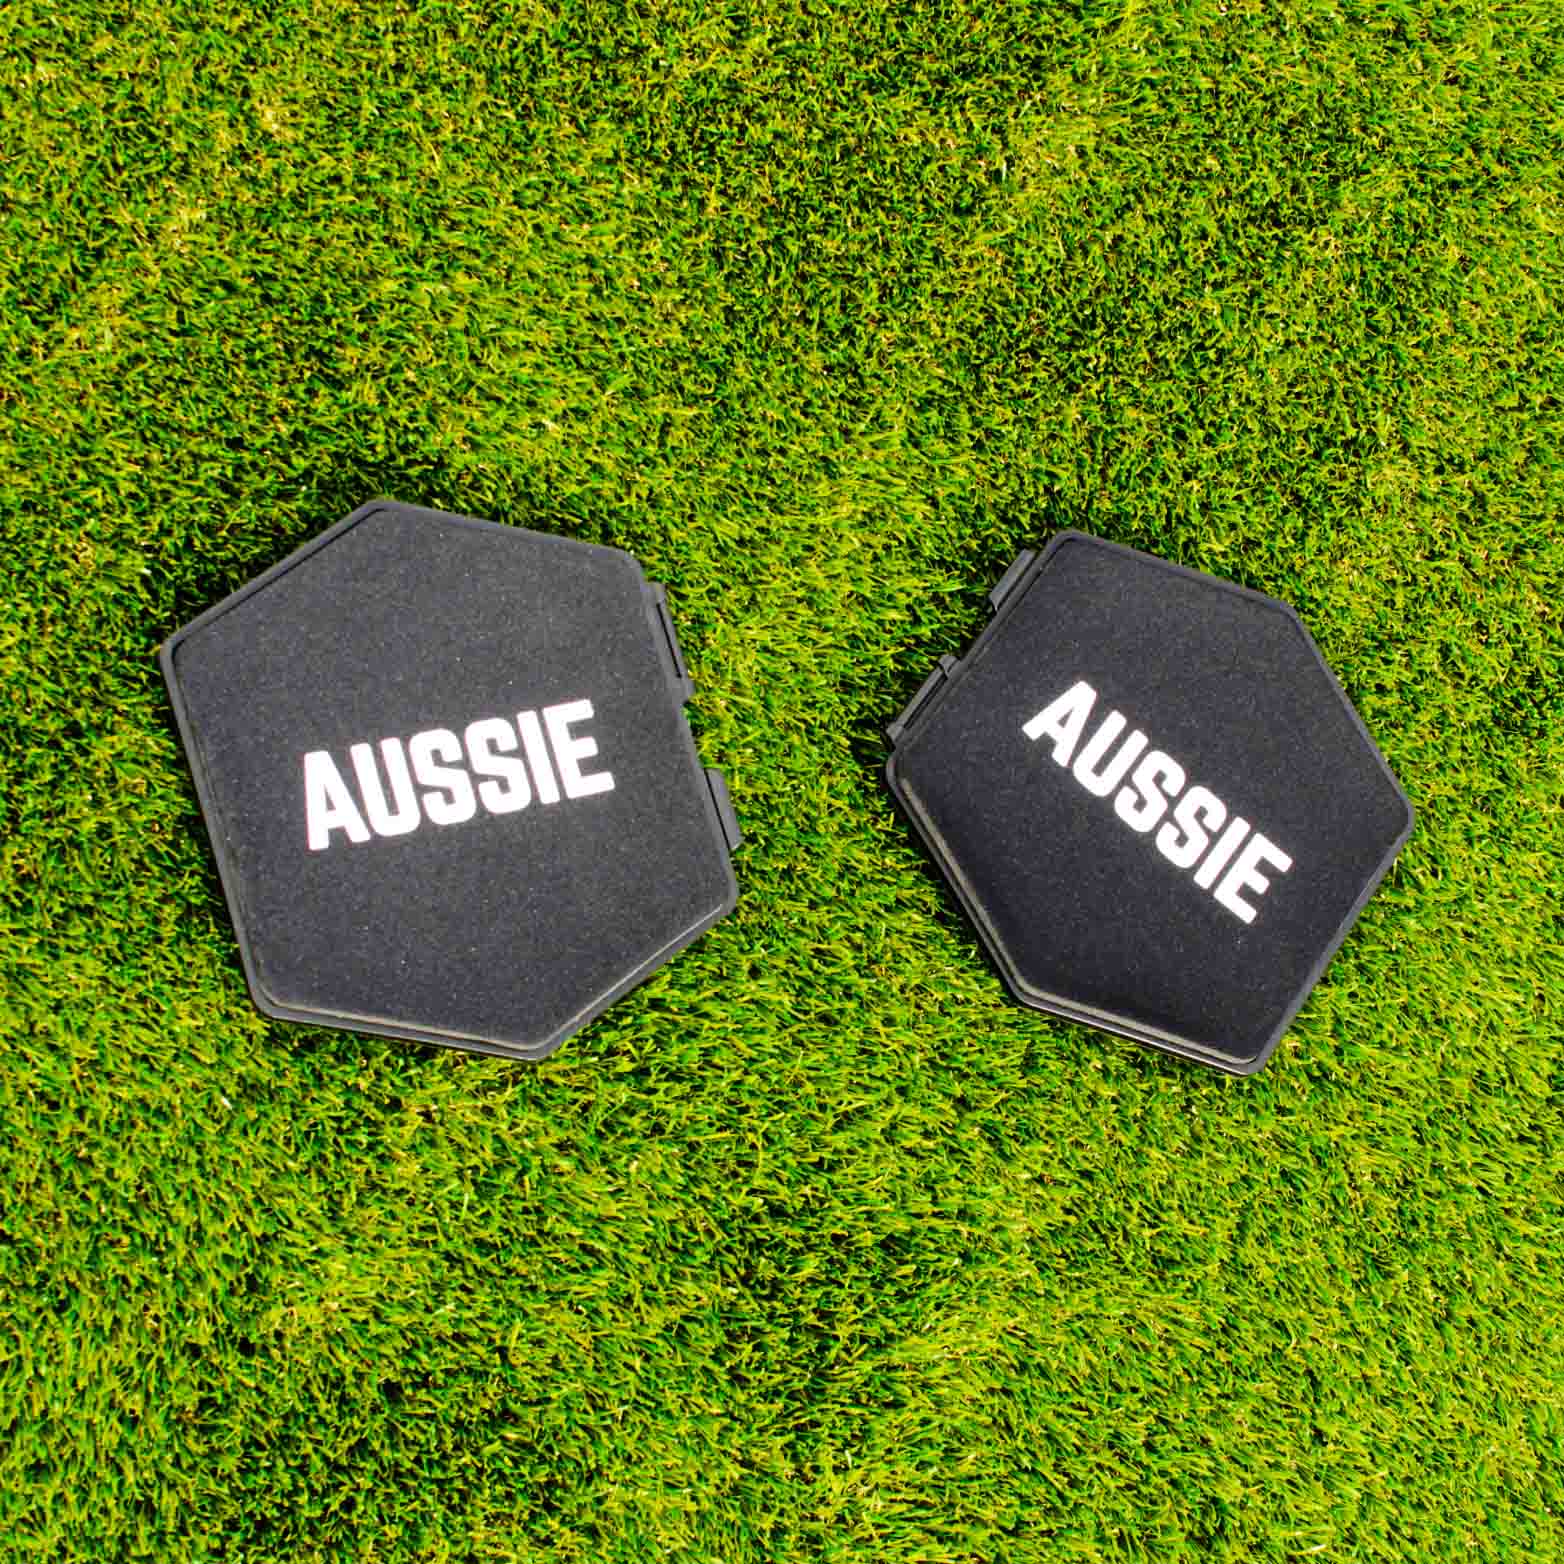 Aussie Pro Sliders - Aussie Fitness Pros